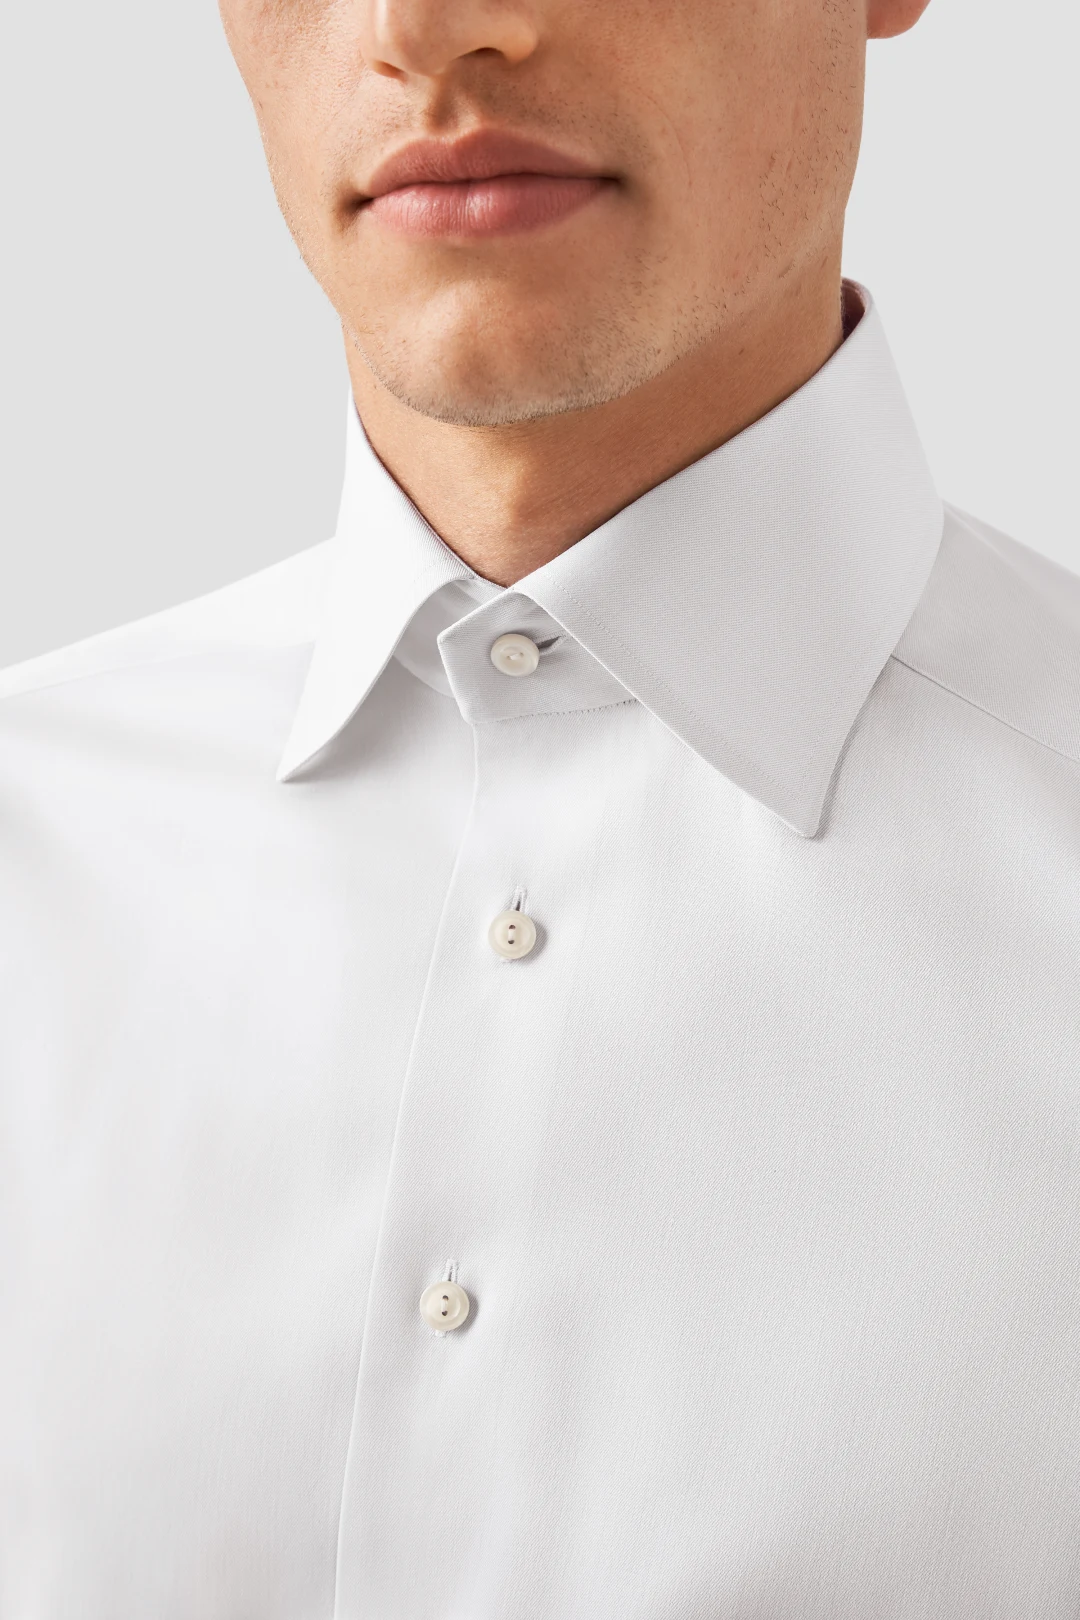 Collars - Eton shirts